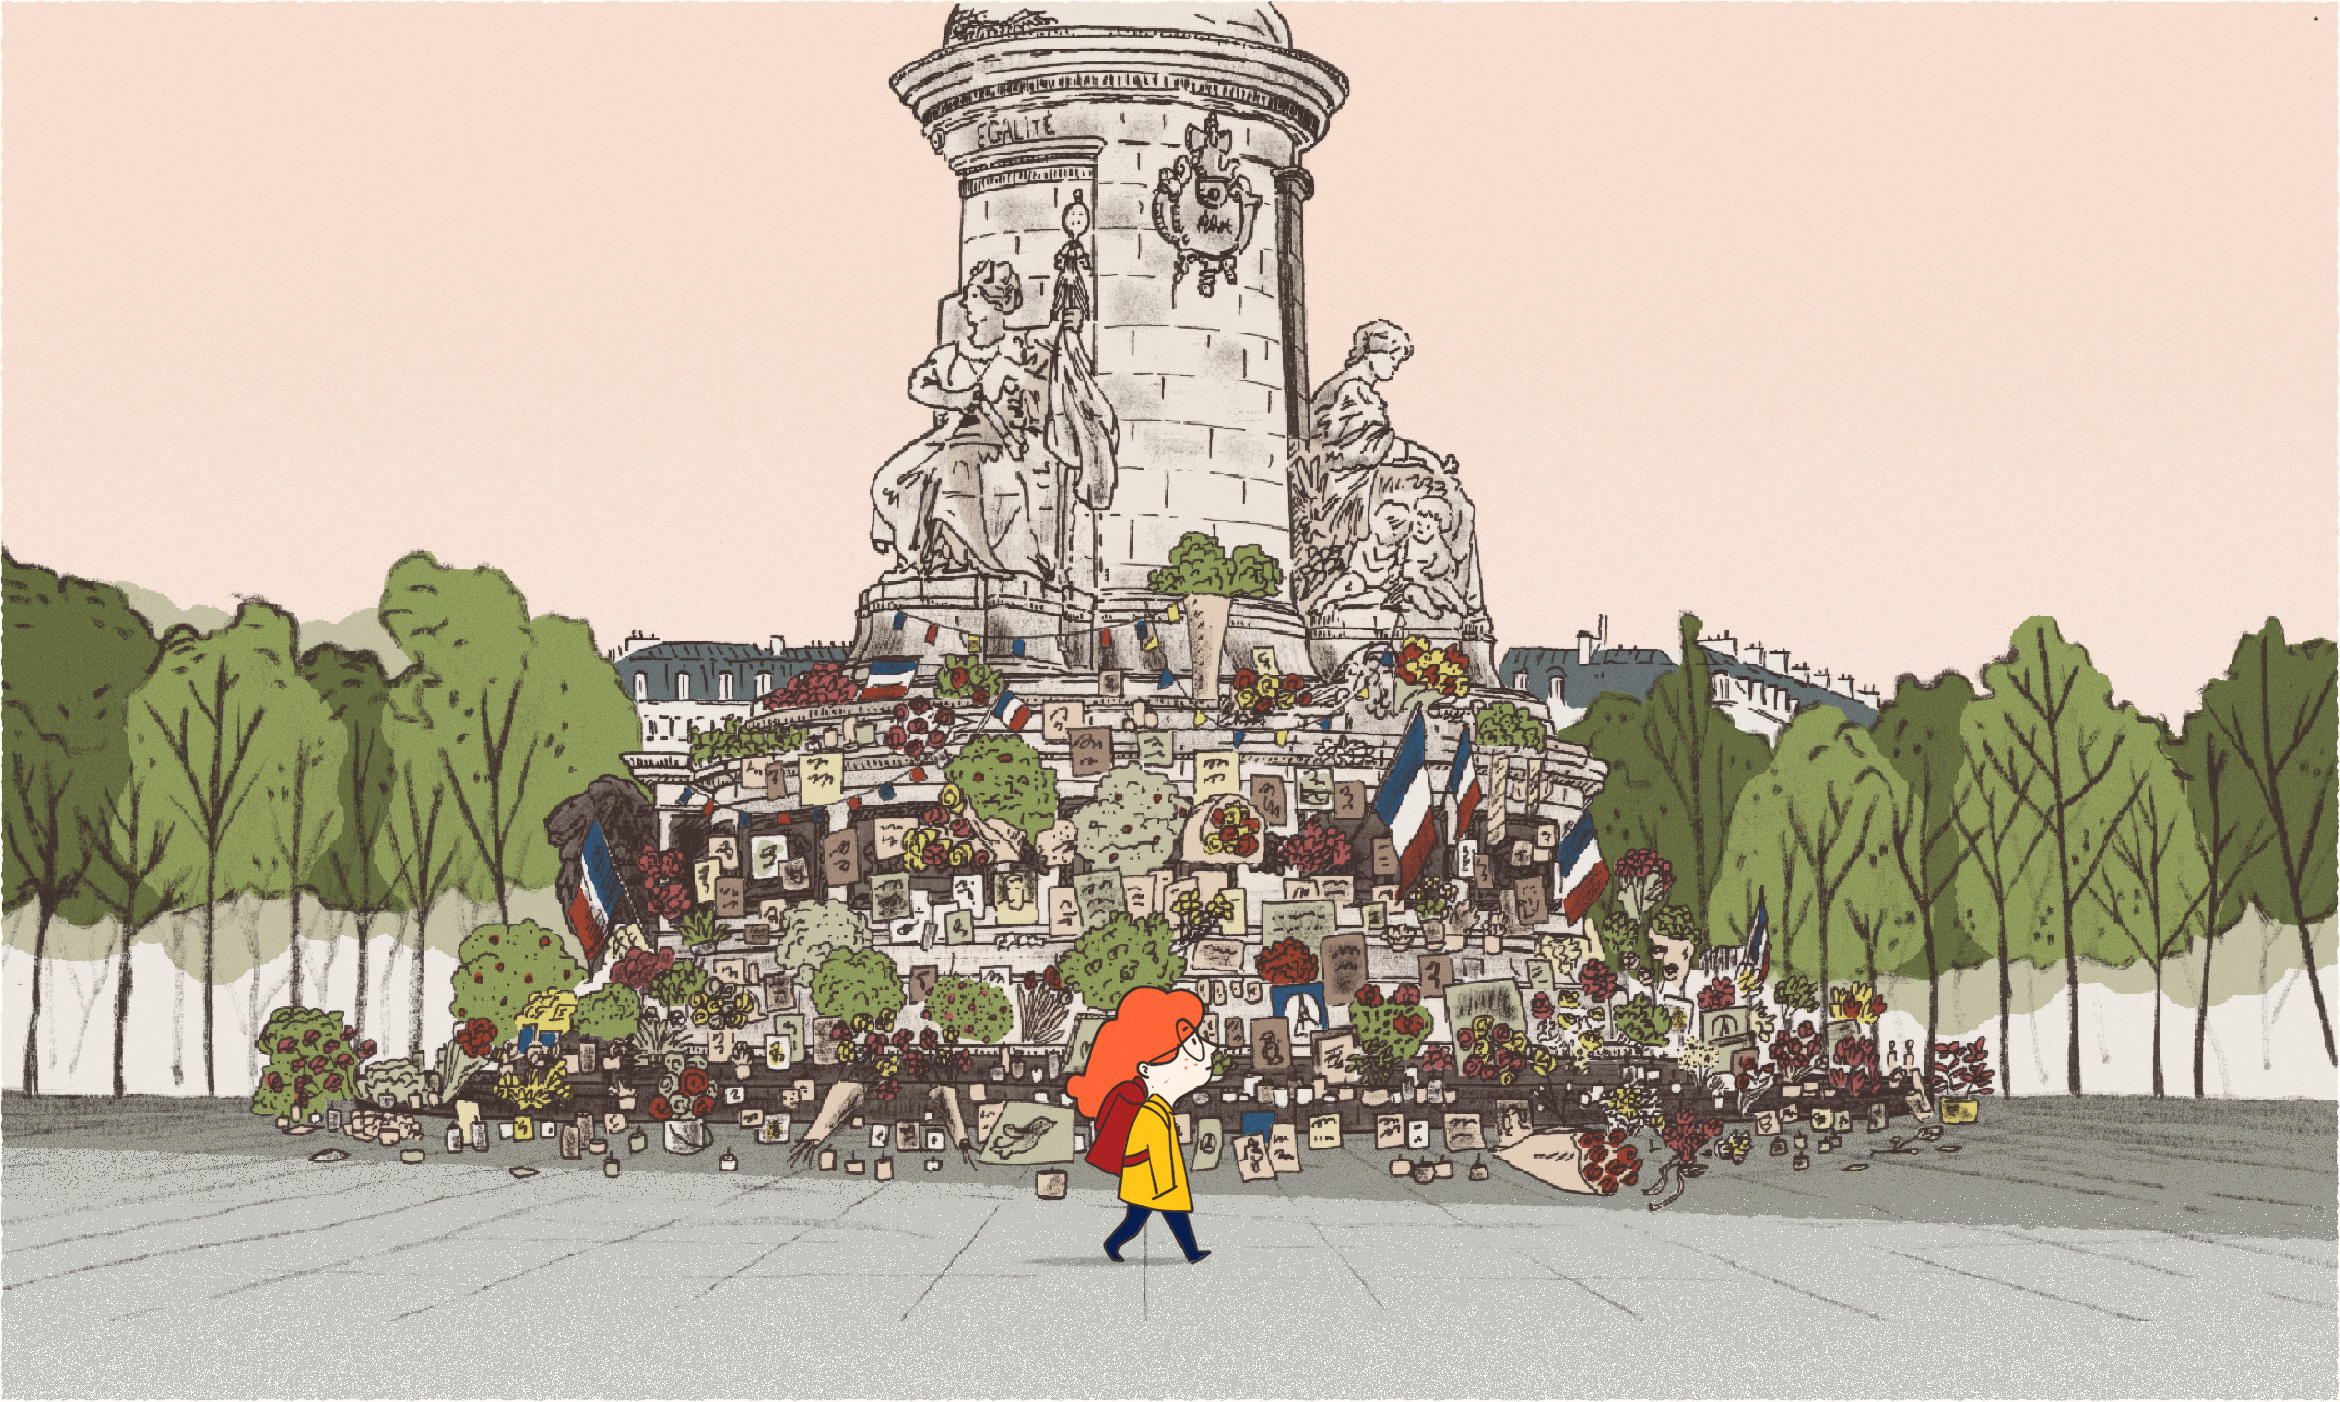 La vie de Château - Place de la République